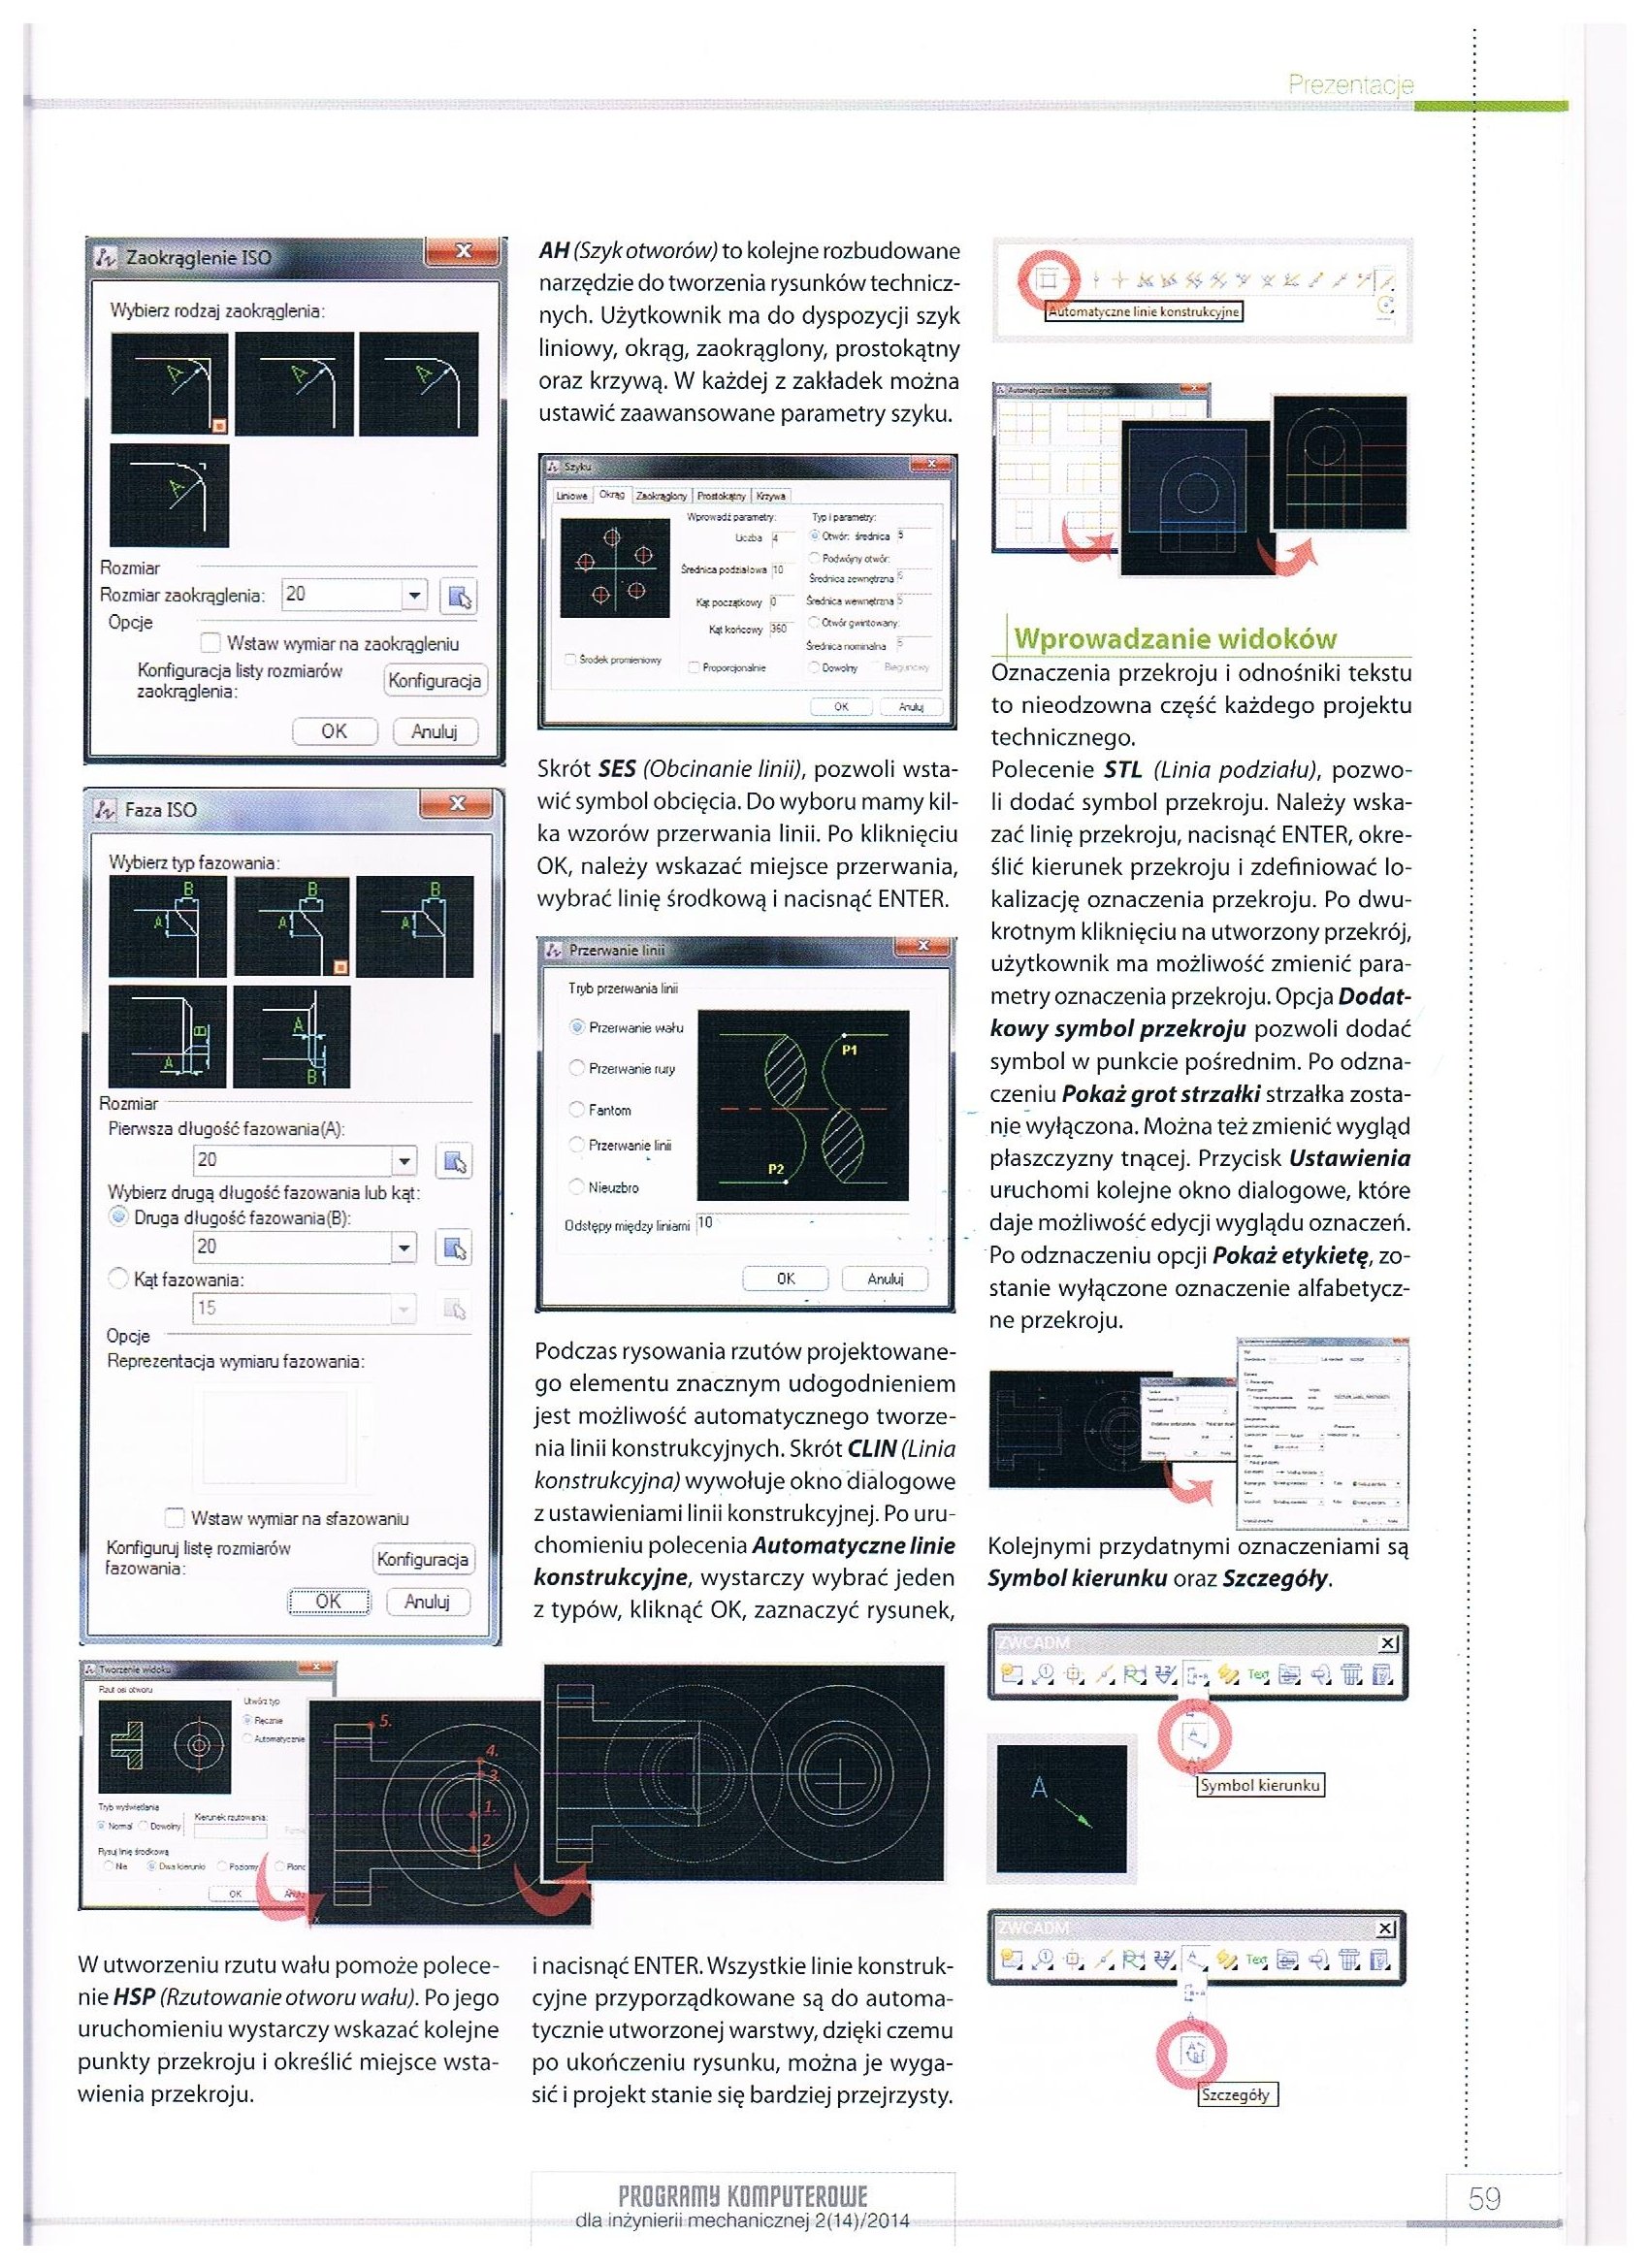 Programy komputerowe dla inzynierii mechanicznej 2-14-2014 str. 59